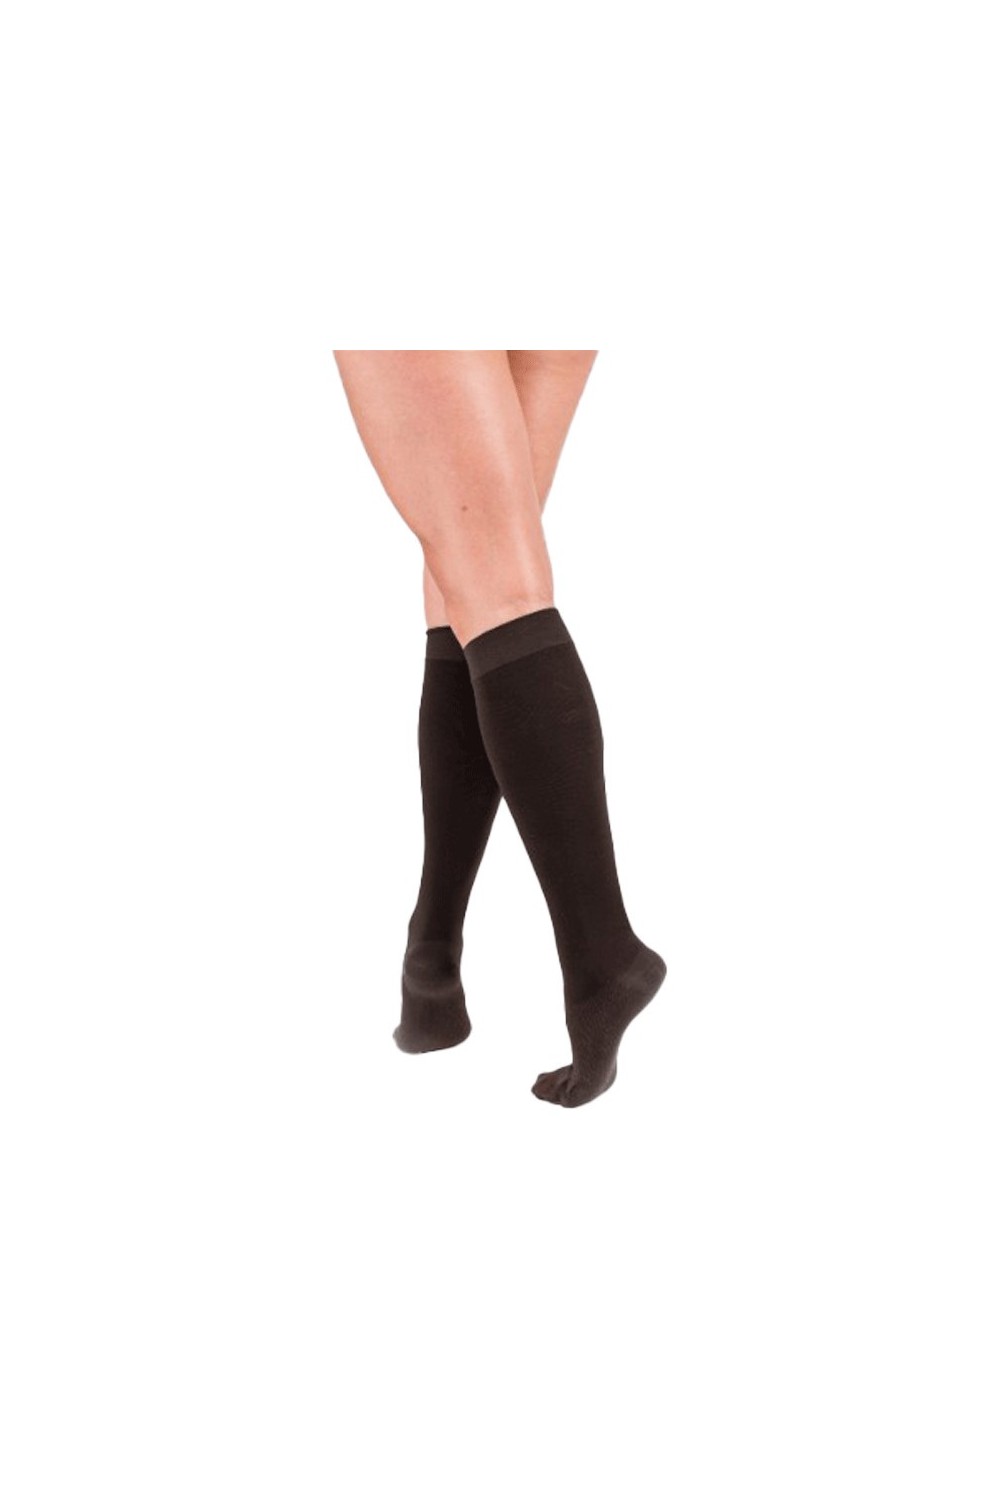 Medilast Comfort Sock Brown T/S